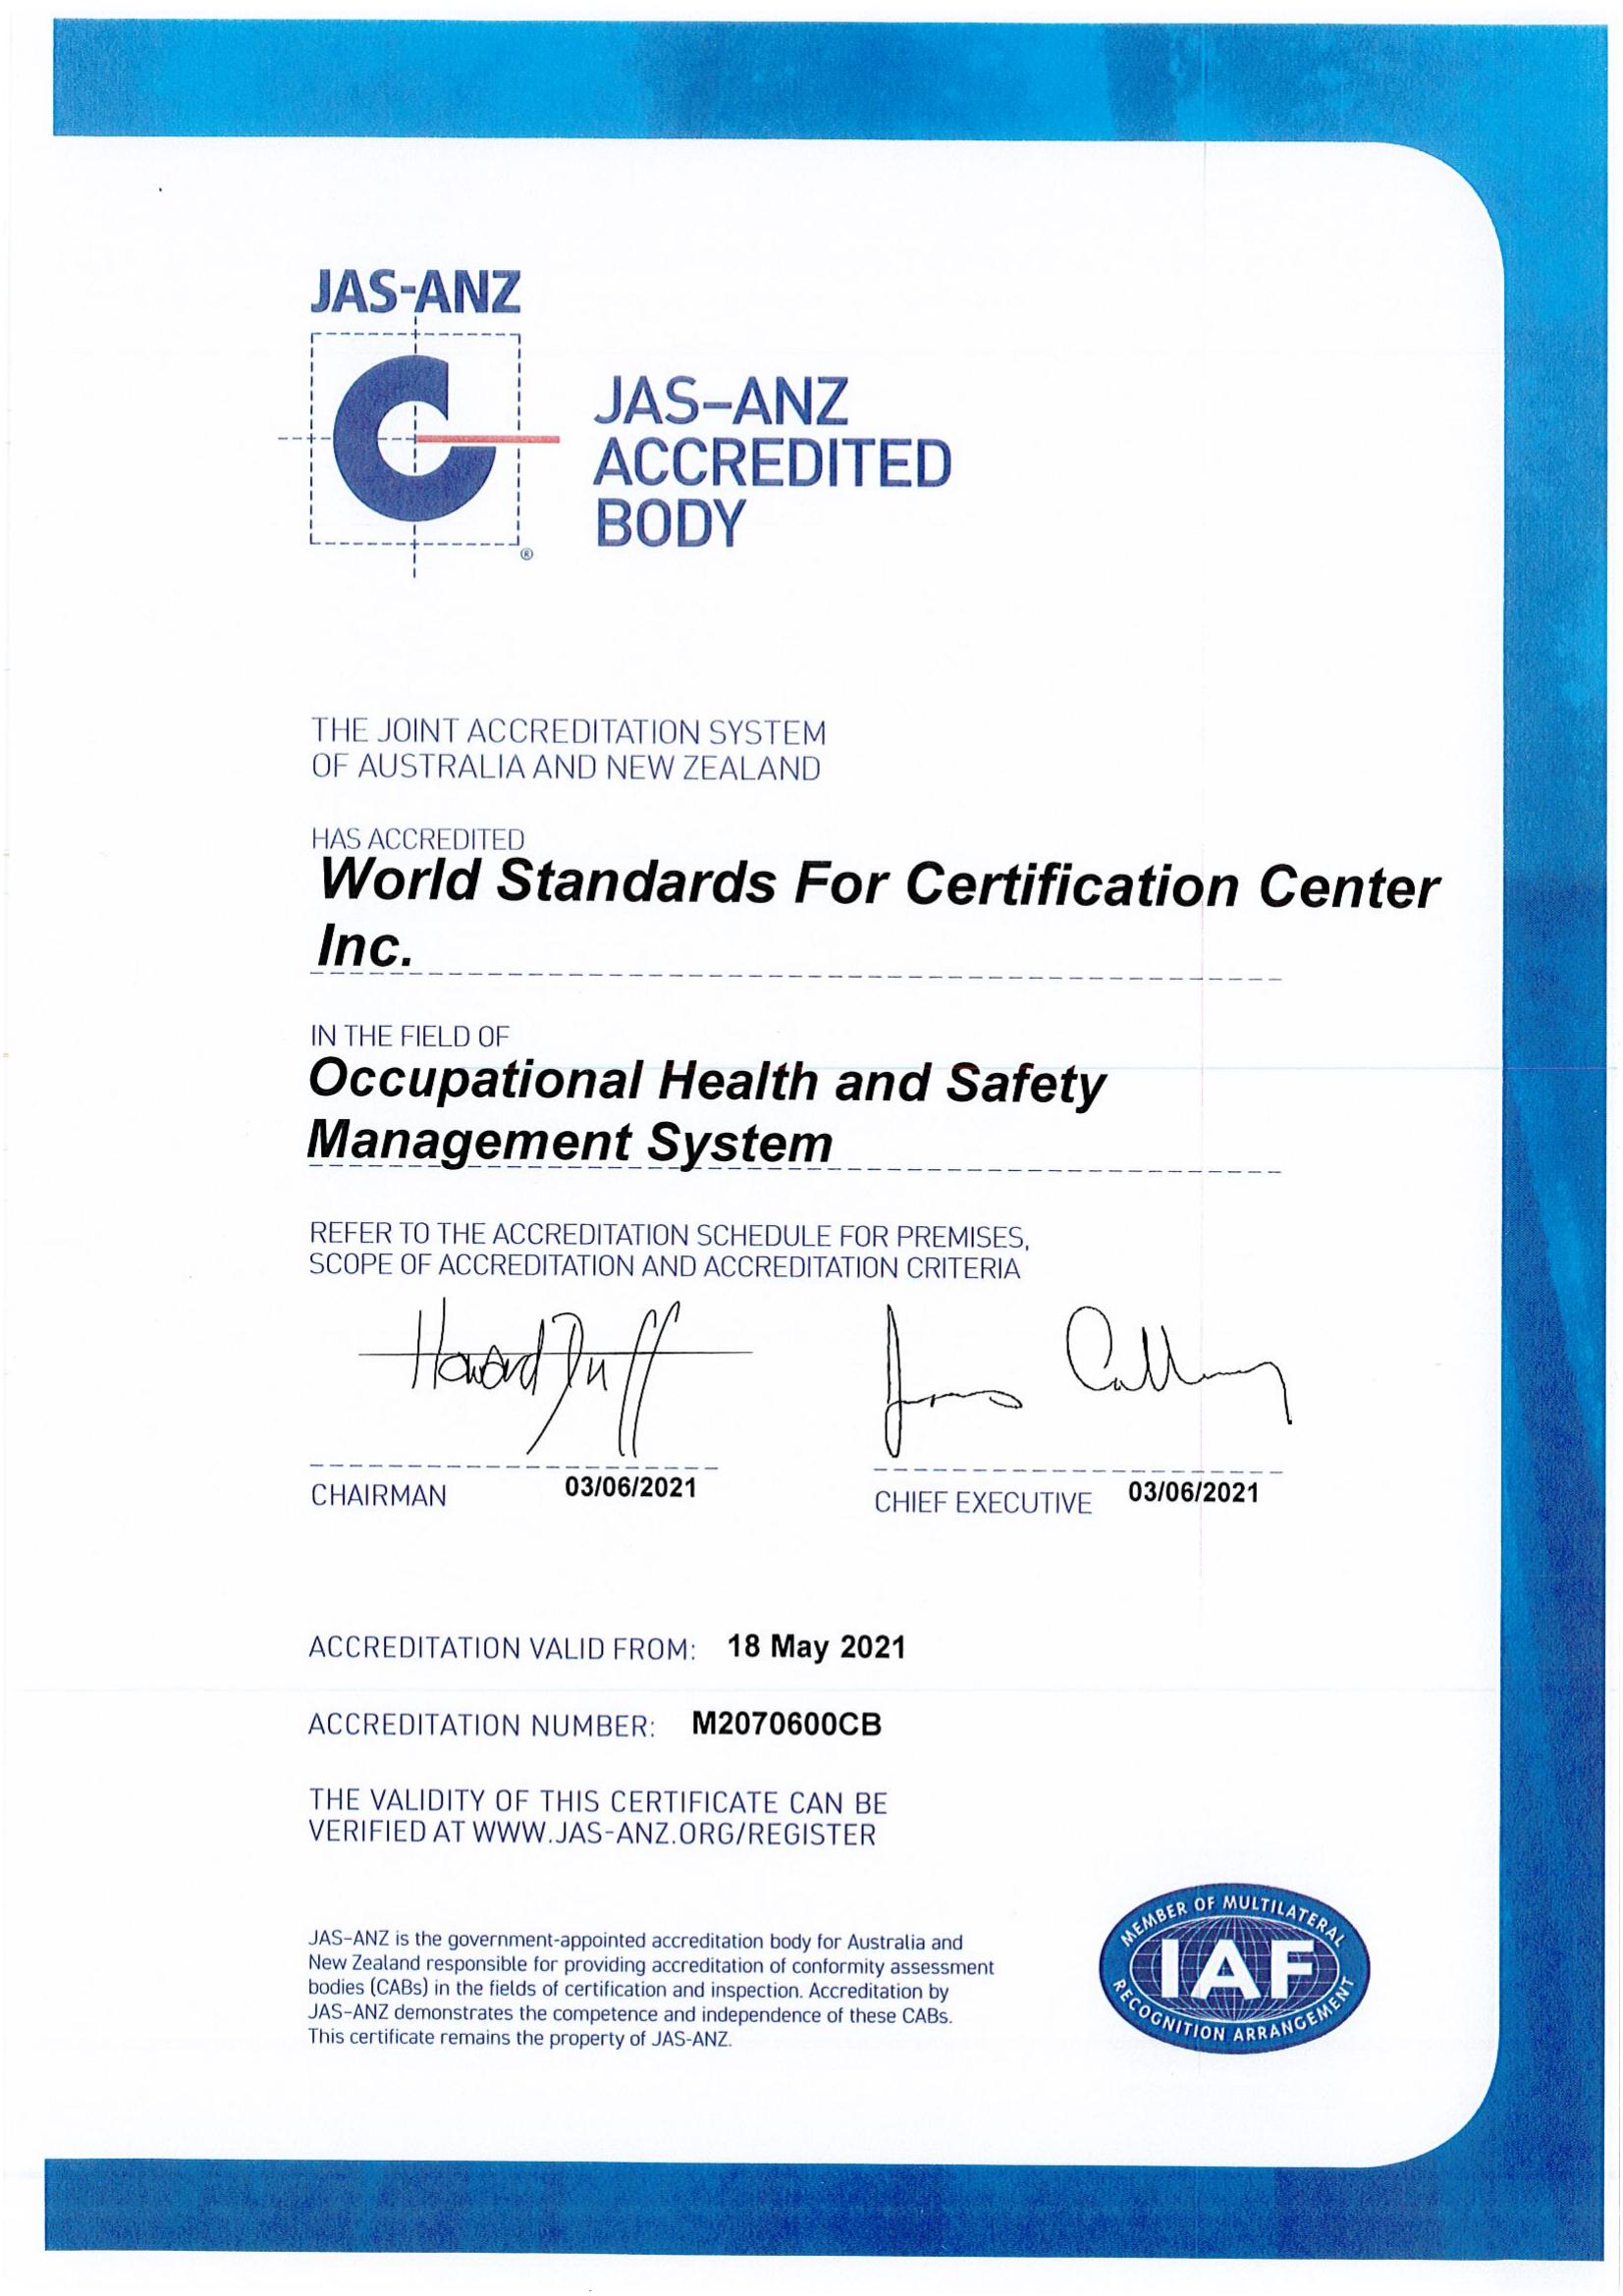 WSF OH-SMS Certificate_00.jpg